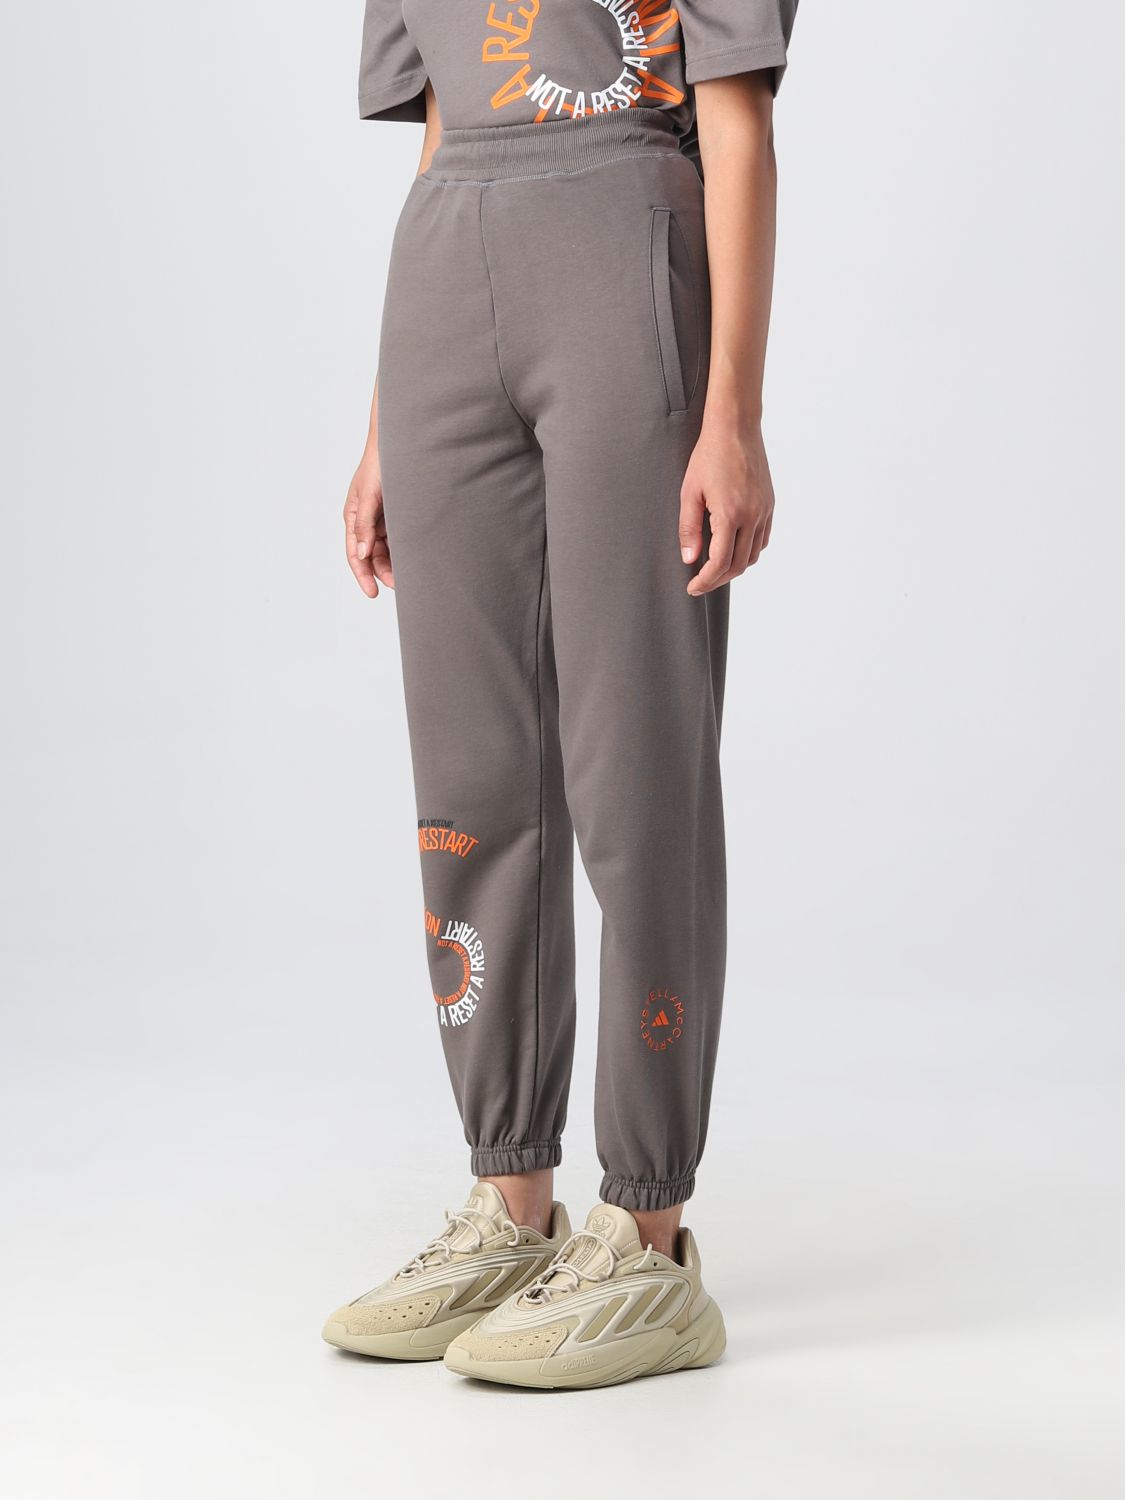 Pantalone Adidas By Stella Mccartney: Pantalone Adidas By Stella Mccartney donna grigio 4